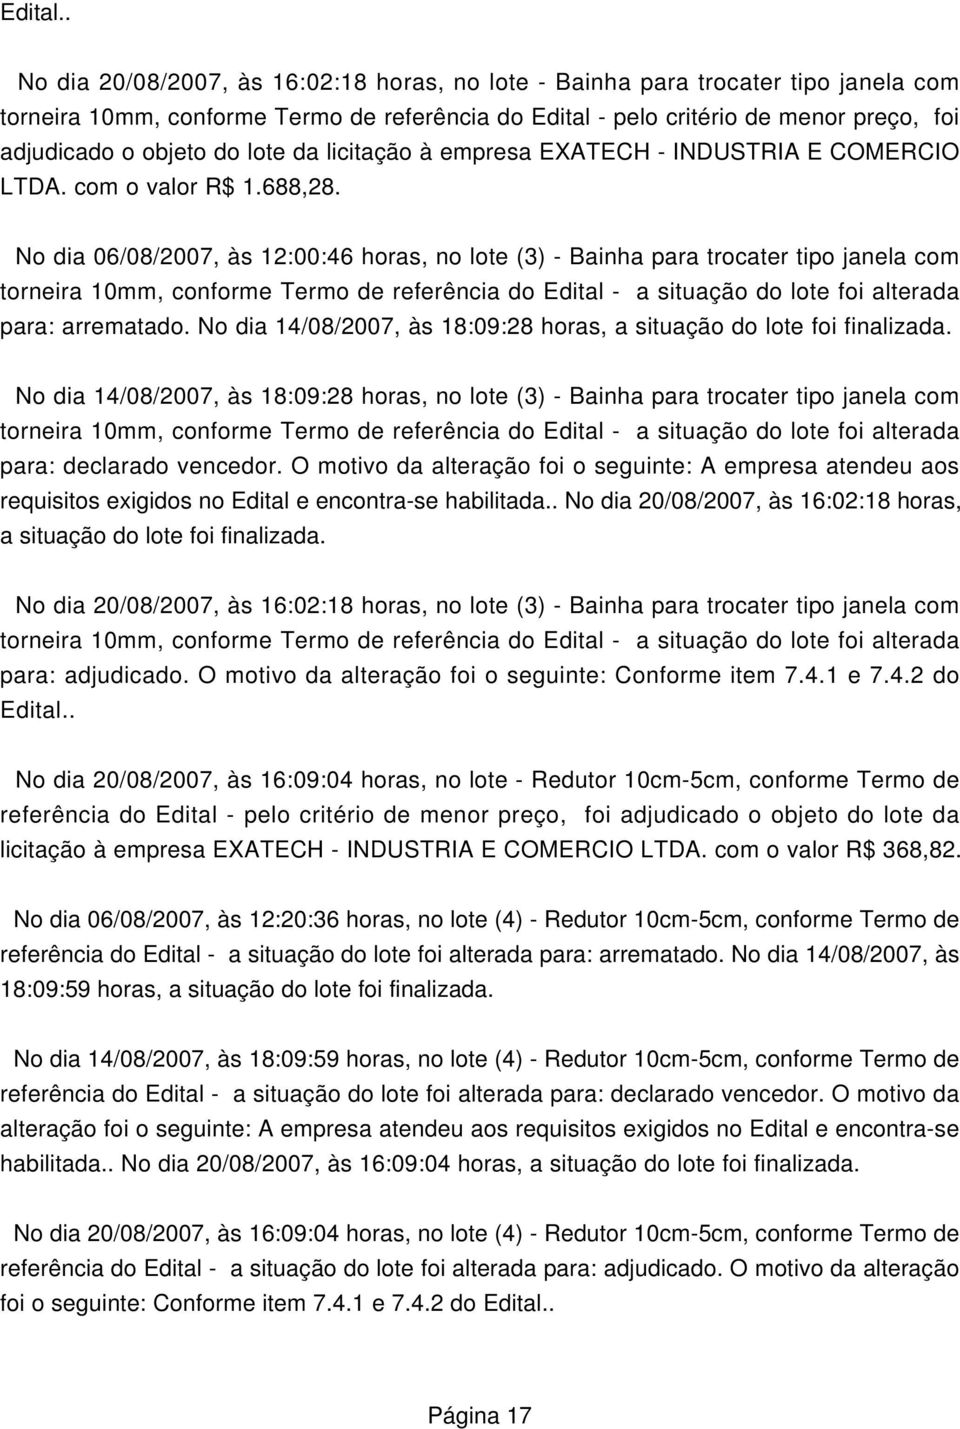 lote da licitação à empresa EXATECH - INDUSTRIA E COMERCIO LTDA. com o valor R$ 1.688,28.